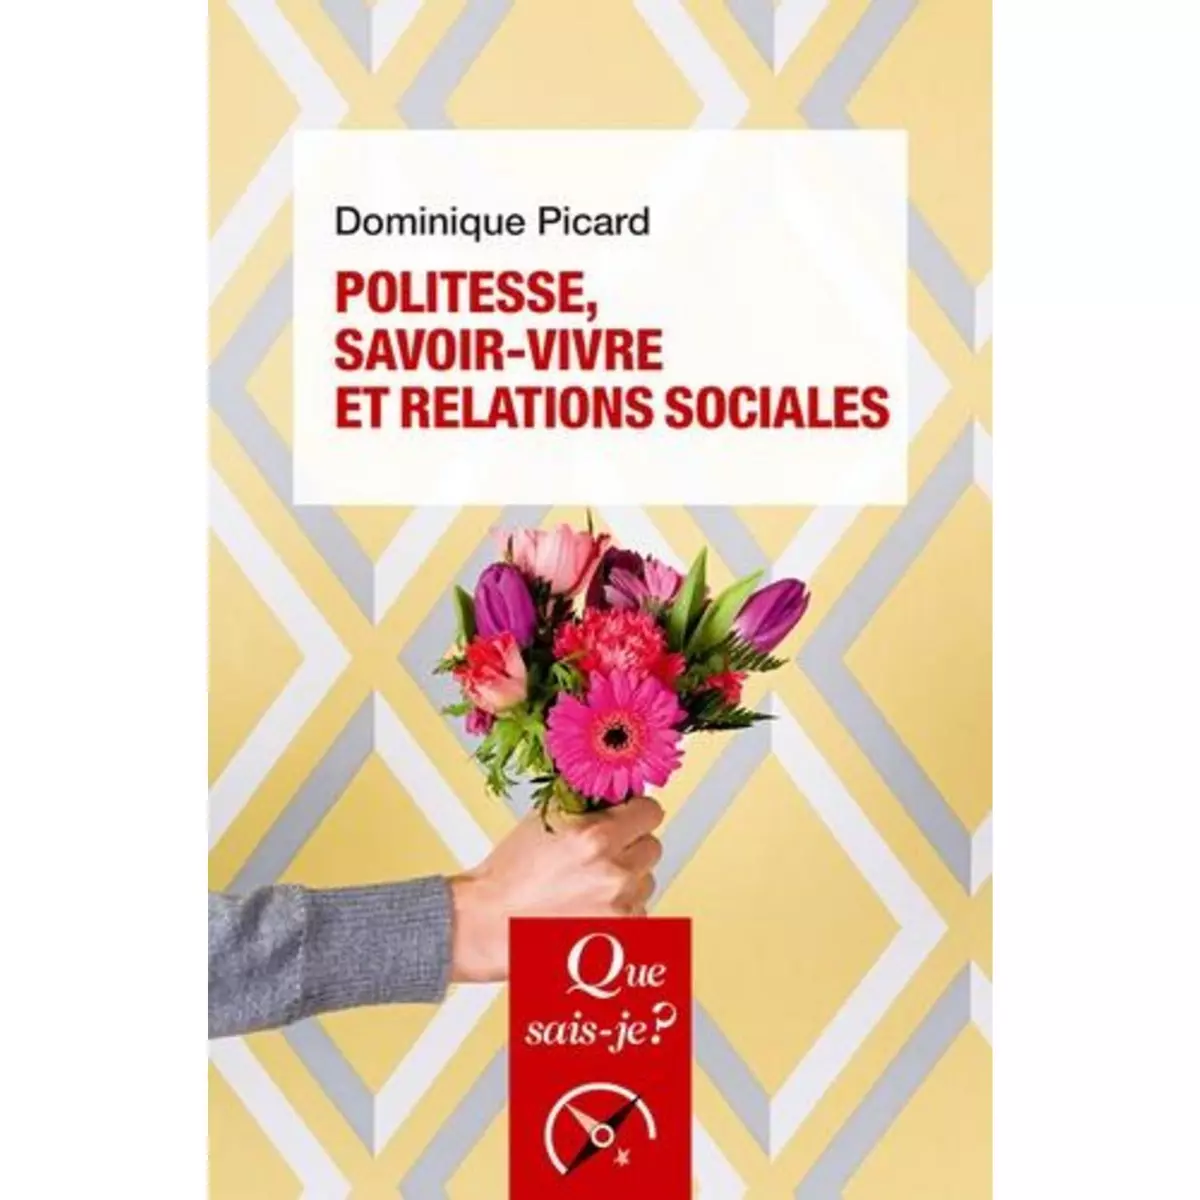  POLITESSE, SAVOIR-VIVRE ET RELATIONS SOCIALES. 7E EDITION, Picard Dominique